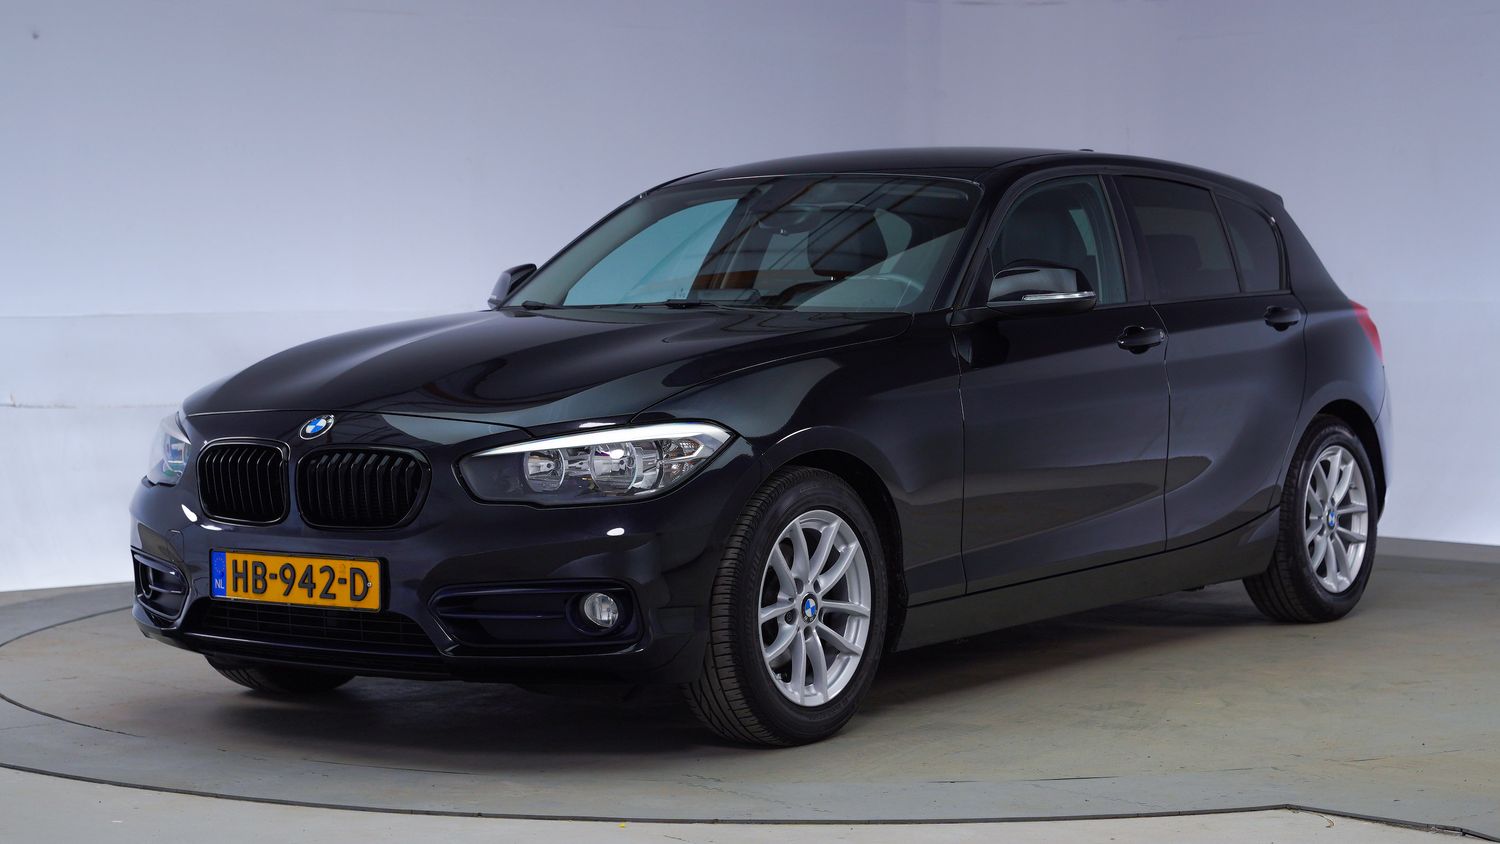 BMW 1-serie Hatchback 2015 HB-942-D 1